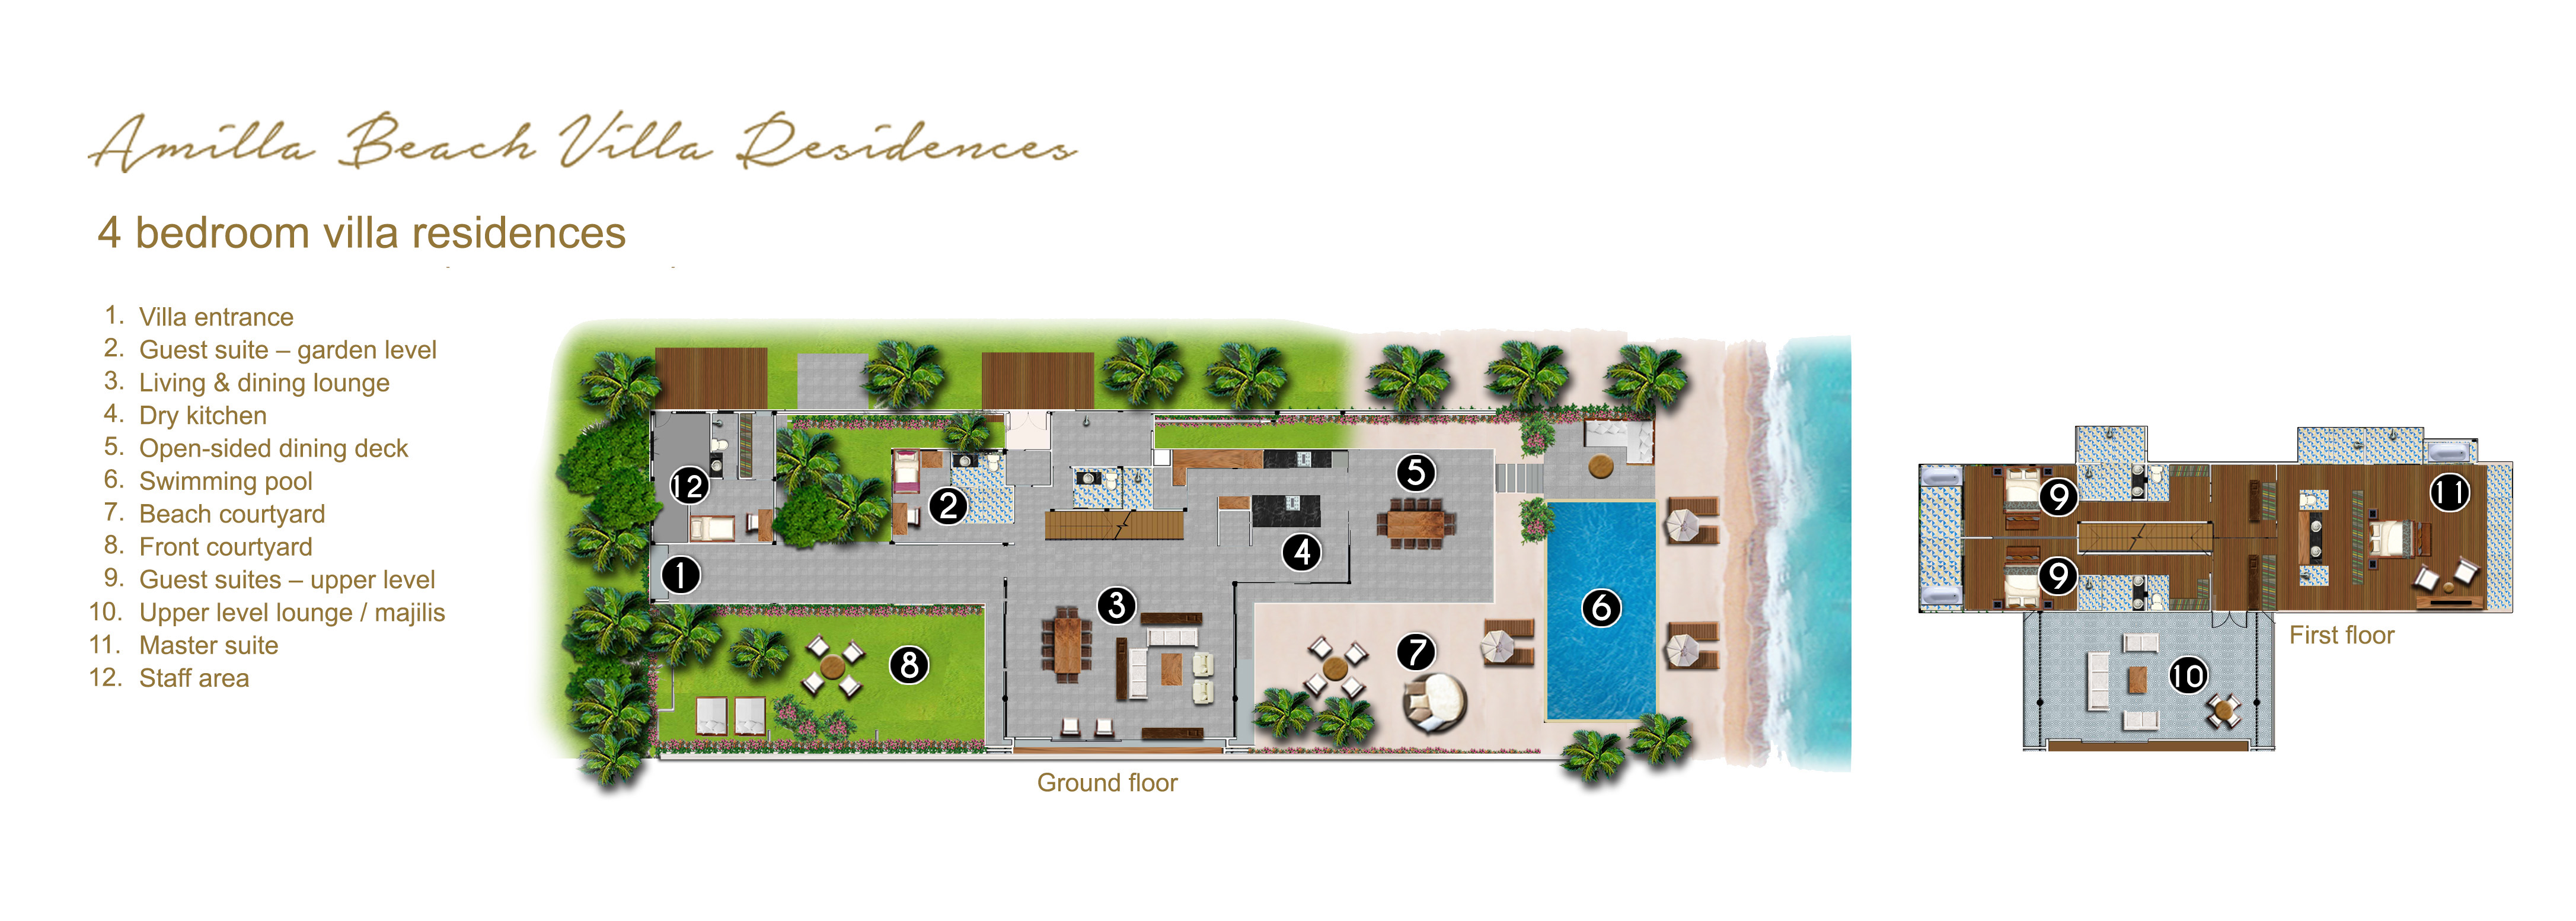 Amilla Beach Villa Residences - 4 bedroom villa residences